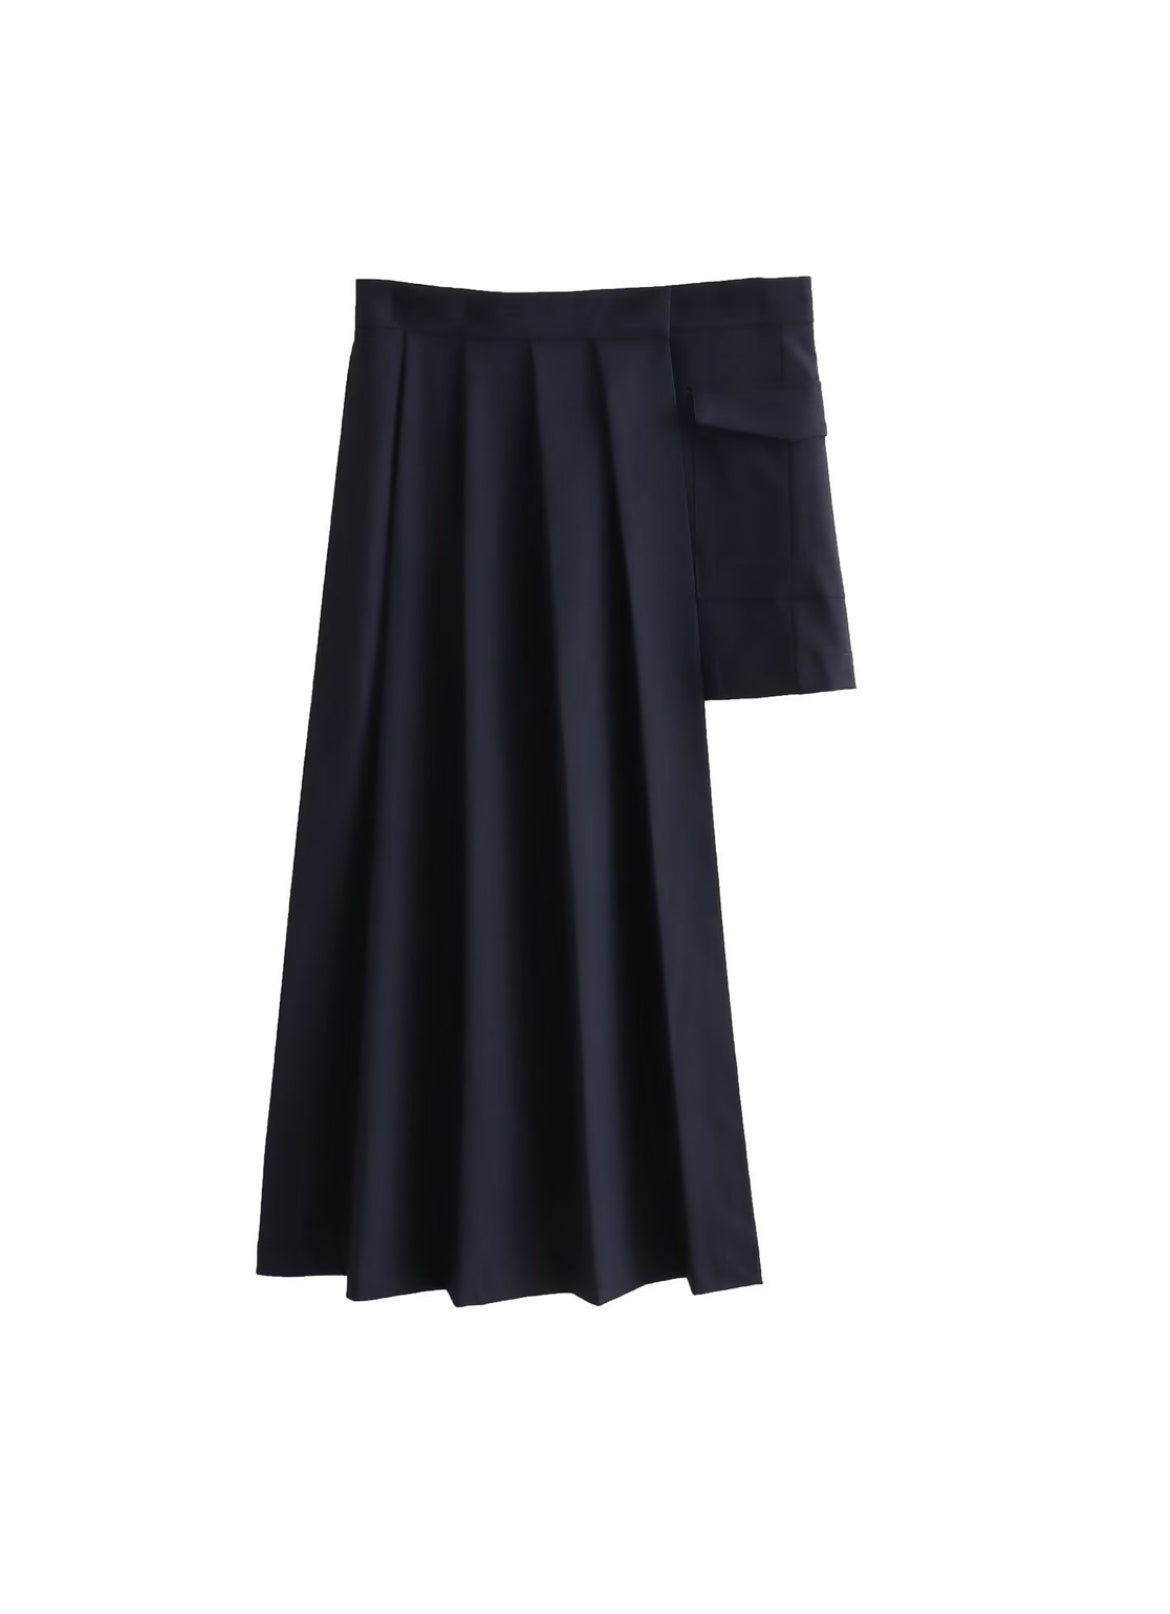 Meryl kilt skirt (preorder)